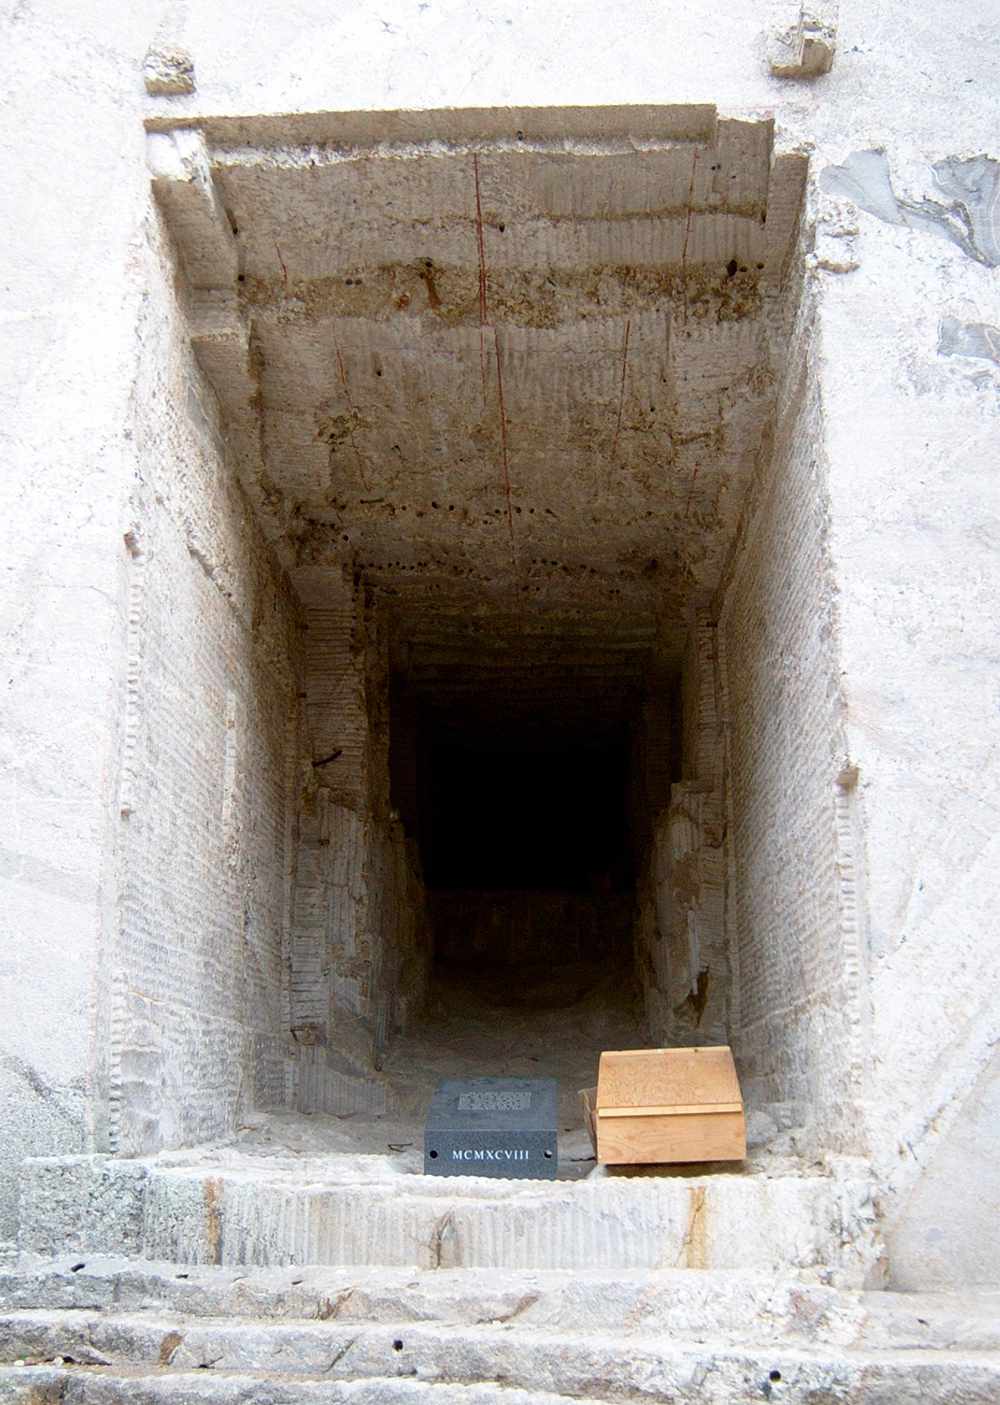 La piedra de coronación que marca el lugar de los registros de porcelana enterrados en la entrada de la inacabada Sala de los Registros.